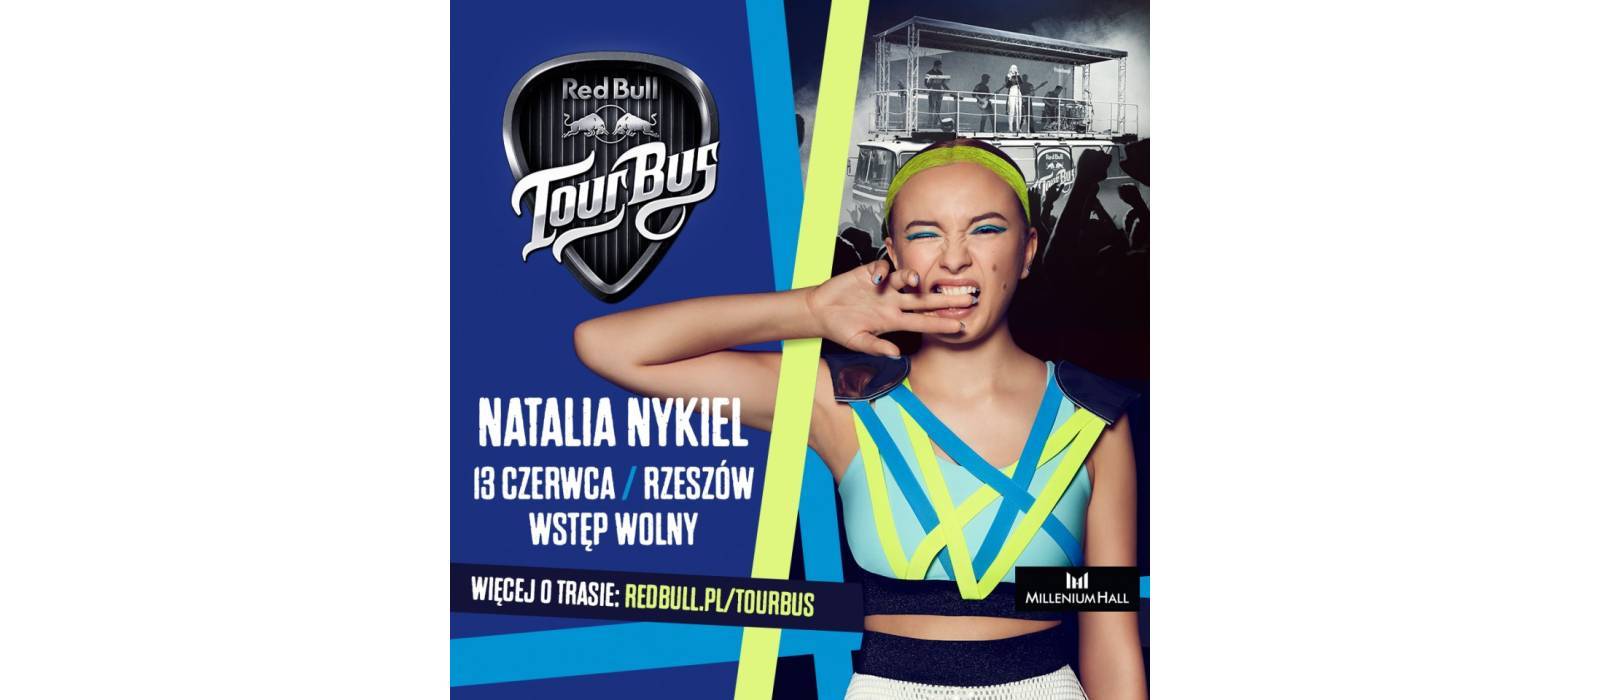 Red Bull Tour Bus: Natalia Nykiel - koncert w Rzeszowie! - 1